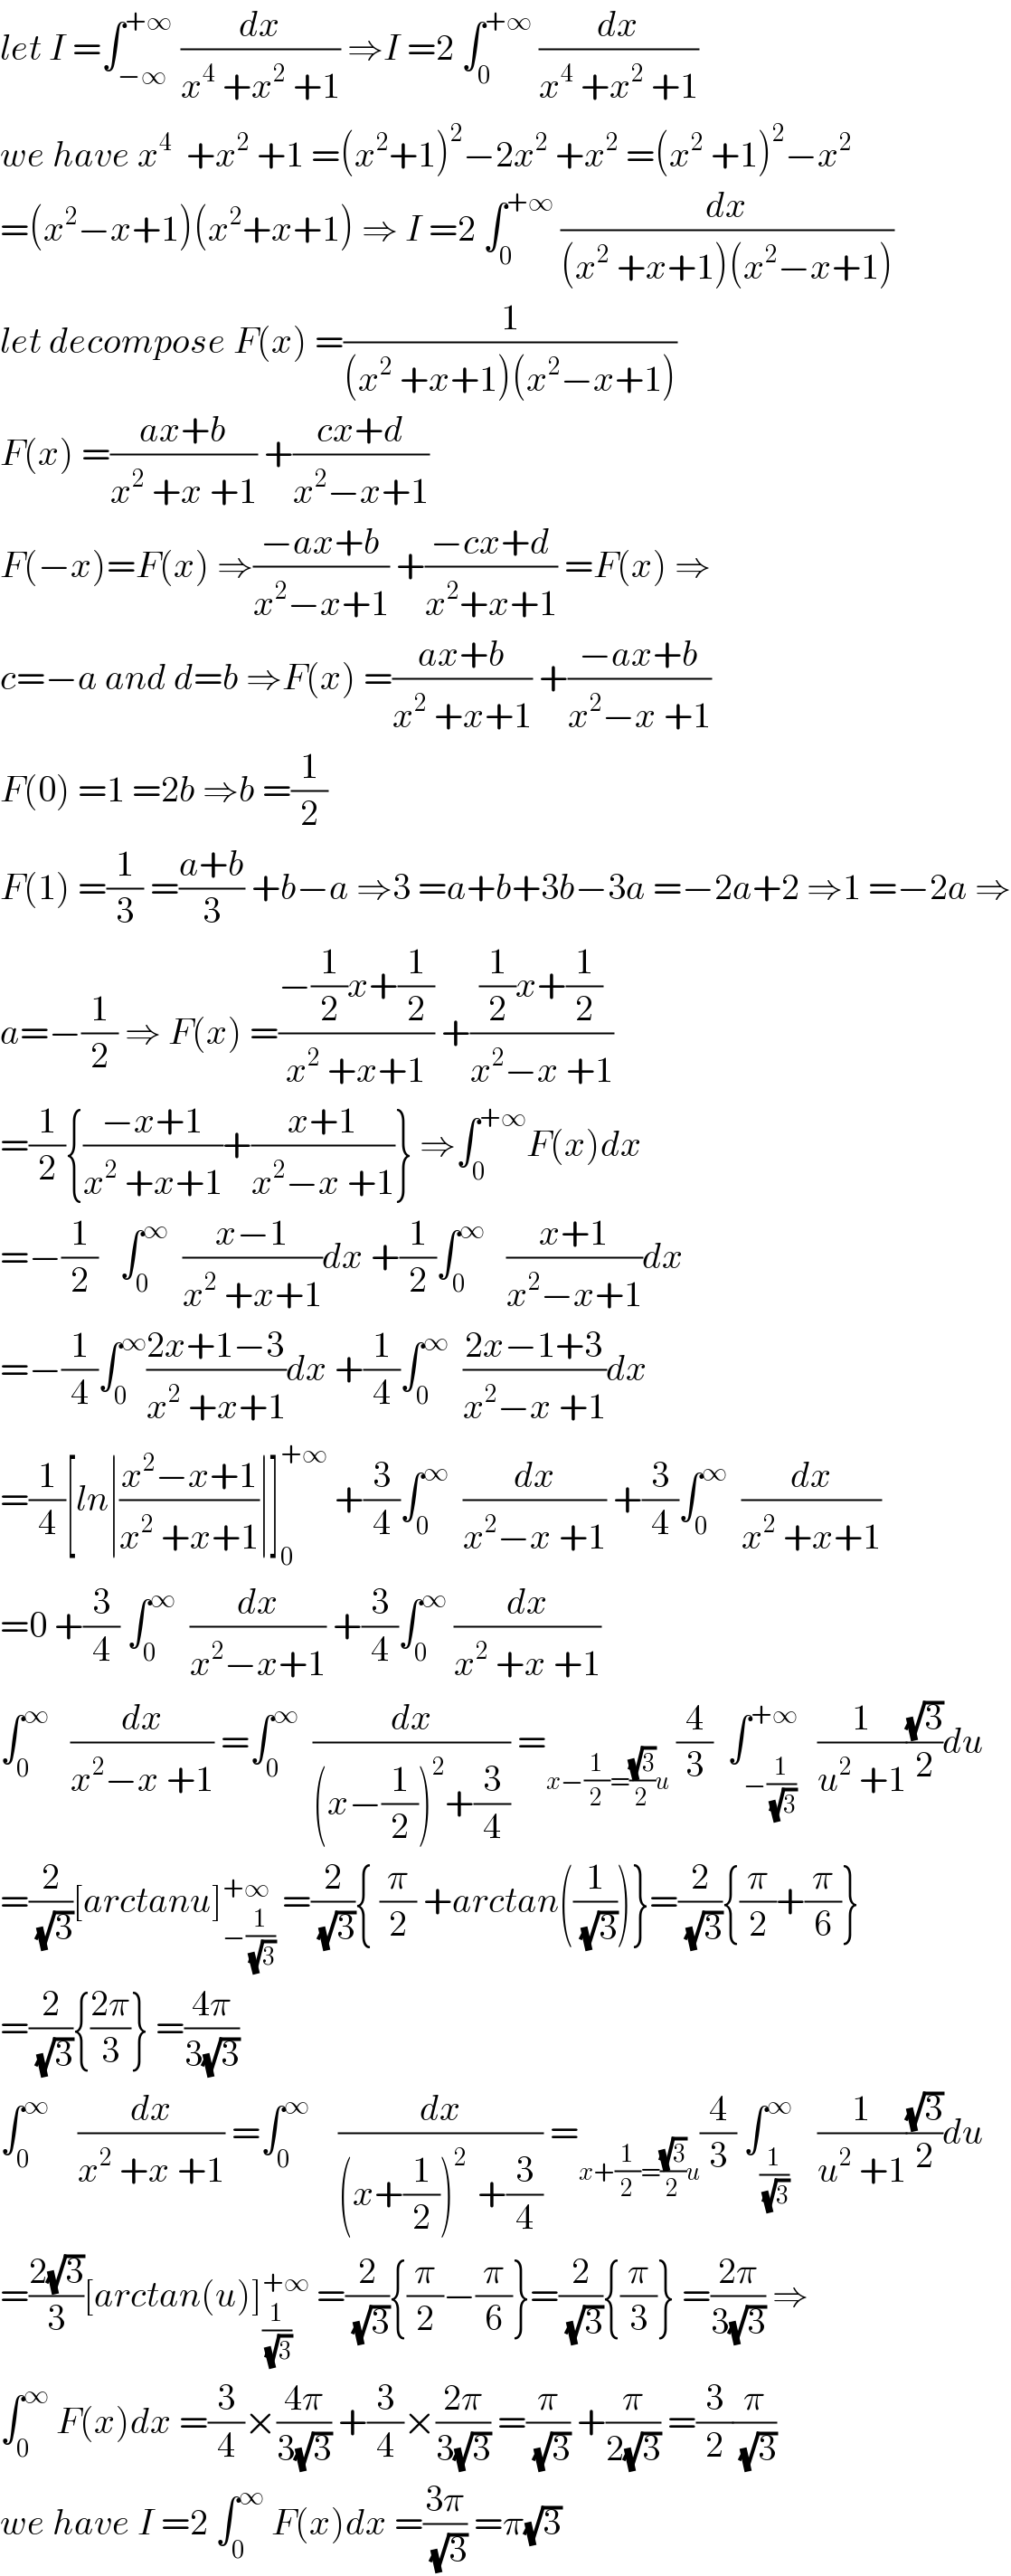 let I =∫_(−∞) ^(+∞)  (dx/(x^4  +x^2  +1)) ⇒I =2 ∫_0 ^(+∞)  (dx/(x^4  +x^2  +1))  we have x^4   +x^2  +1 =(x^2 +1)^2 −2x^2  +x^2  =(x^2  +1)^2 −x^2   =(x^2 −x+1)(x^2 +x+1) ⇒ I =2 ∫_0 ^(+∞)  (dx/((x^2  +x+1)(x^2 −x+1)))  let decompose F(x) =(1/((x^2  +x+1)(x^2 −x+1)))   F(x) =((ax+b)/(x^2  +x +1)) +((cx+d)/(x^2 −x+1))  F(−x)=F(x) ⇒((−ax+b)/(x^2 −x+1)) +((−cx+d)/(x^2 +x+1)) =F(x) ⇒  c=−a and d=b ⇒F(x) =((ax+b)/(x^2  +x+1)) +((−ax+b)/(x^2 −x +1))  F(0) =1 =2b ⇒b =(1/2)  F(1) =(1/3) =((a+b)/3) +b−a ⇒3 =a+b+3b−3a =−2a+2 ⇒1 =−2a ⇒  a=−(1/2) ⇒ F(x) =((−(1/2)x+(1/2))/(x^2  +x+1)) +(((1/2)x+(1/2))/(x^2 −x +1))  =(1/2){((−x+1)/(x^2  +x+1))+((x+1)/(x^2 −x +1))} ⇒∫_0 ^(+∞) F(x)dx  =−(1/2)   ∫_0 ^∞   ((x−1)/(x^2  +x+1))dx +(1/2)∫_0 ^∞    ((x+1)/(x^2 −x+1))dx  =−(1/4)∫_0 ^∞ ((2x+1−3)/(x^2  +x+1))dx +(1/4)∫_0 ^∞   ((2x−1+3)/(x^2 −x +1))dx  =(1/4)[ln∣((x^2 −x+1)/(x^2  +x+1))∣]_0 ^(+∞)  +(3/4)∫_0 ^∞   (dx/(x^2 −x +1)) +(3/4)∫_0 ^∞   (dx/(x^2  +x+1))  =0 +(3/4) ∫_0 ^∞   (dx/(x^2 −x+1)) +(3/4)∫_0 ^∞  (dx/(x^2  +x +1))  ∫_0 ^∞    (dx/(x^2 −x +1)) =∫_0 ^∞   (dx/((x−(1/2))^2 +(3/4))) =_(x−(1/2)=((√3)/2)u)  (4/3)  ∫_(−(1/(√3))) ^(+∞)   (1/(u^2  +1))((√3)/2)du  =(2/(√3))[arctanu]_(−(1/(√3))) ^(+∞)  =(2/(√3)){ (π/2) +arctan((1/(√3)))}=(2/(√3)){(π/2)+(π/6)}  =(2/(√3)){((2π)/3)} =((4π)/(3(√3)))  ∫_0 ^∞     (dx/(x^2  +x +1)) =∫_0 ^∞     (dx/((x+(1/2))^(2 )  +(3/4))) =_(x+(1/2)=((√3)/2)u) (4/3) ∫_(1/(√3)) ^∞    (1/(u^2  +1))((√3)/2)du  =((2(√3))/3)[arctan(u)]_(1/(√3)) ^(+∞)  =(2/(√3)){(π/2)−(π/6)}=(2/(√3)){(π/3)} =((2π)/(3(√3))) ⇒  ∫_0 ^∞  F(x)dx =(3/4)×((4π)/(3(√3))) +(3/4)×((2π)/(3(√3))) =(π/(√3)) +(π/(2(√3))) =(3/2)(π/(√3))  we have I =2 ∫_0 ^∞  F(x)dx =((3π)/(√3)) =π(√3)  